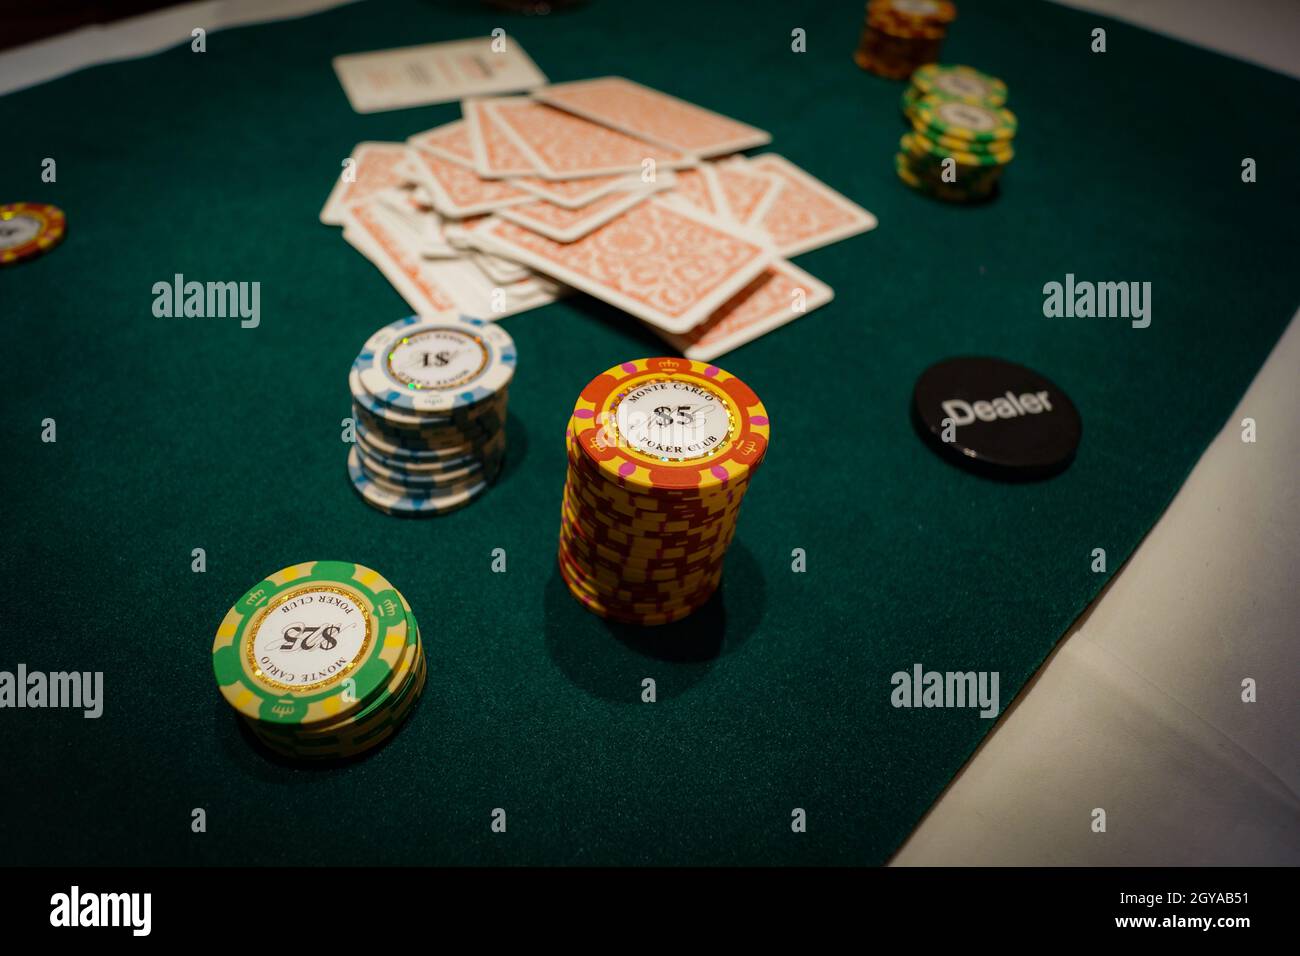 Imagen de Texas Holdem (poker). Ubicación del rodaje: Área metropolitana de Tokio Foto de stock